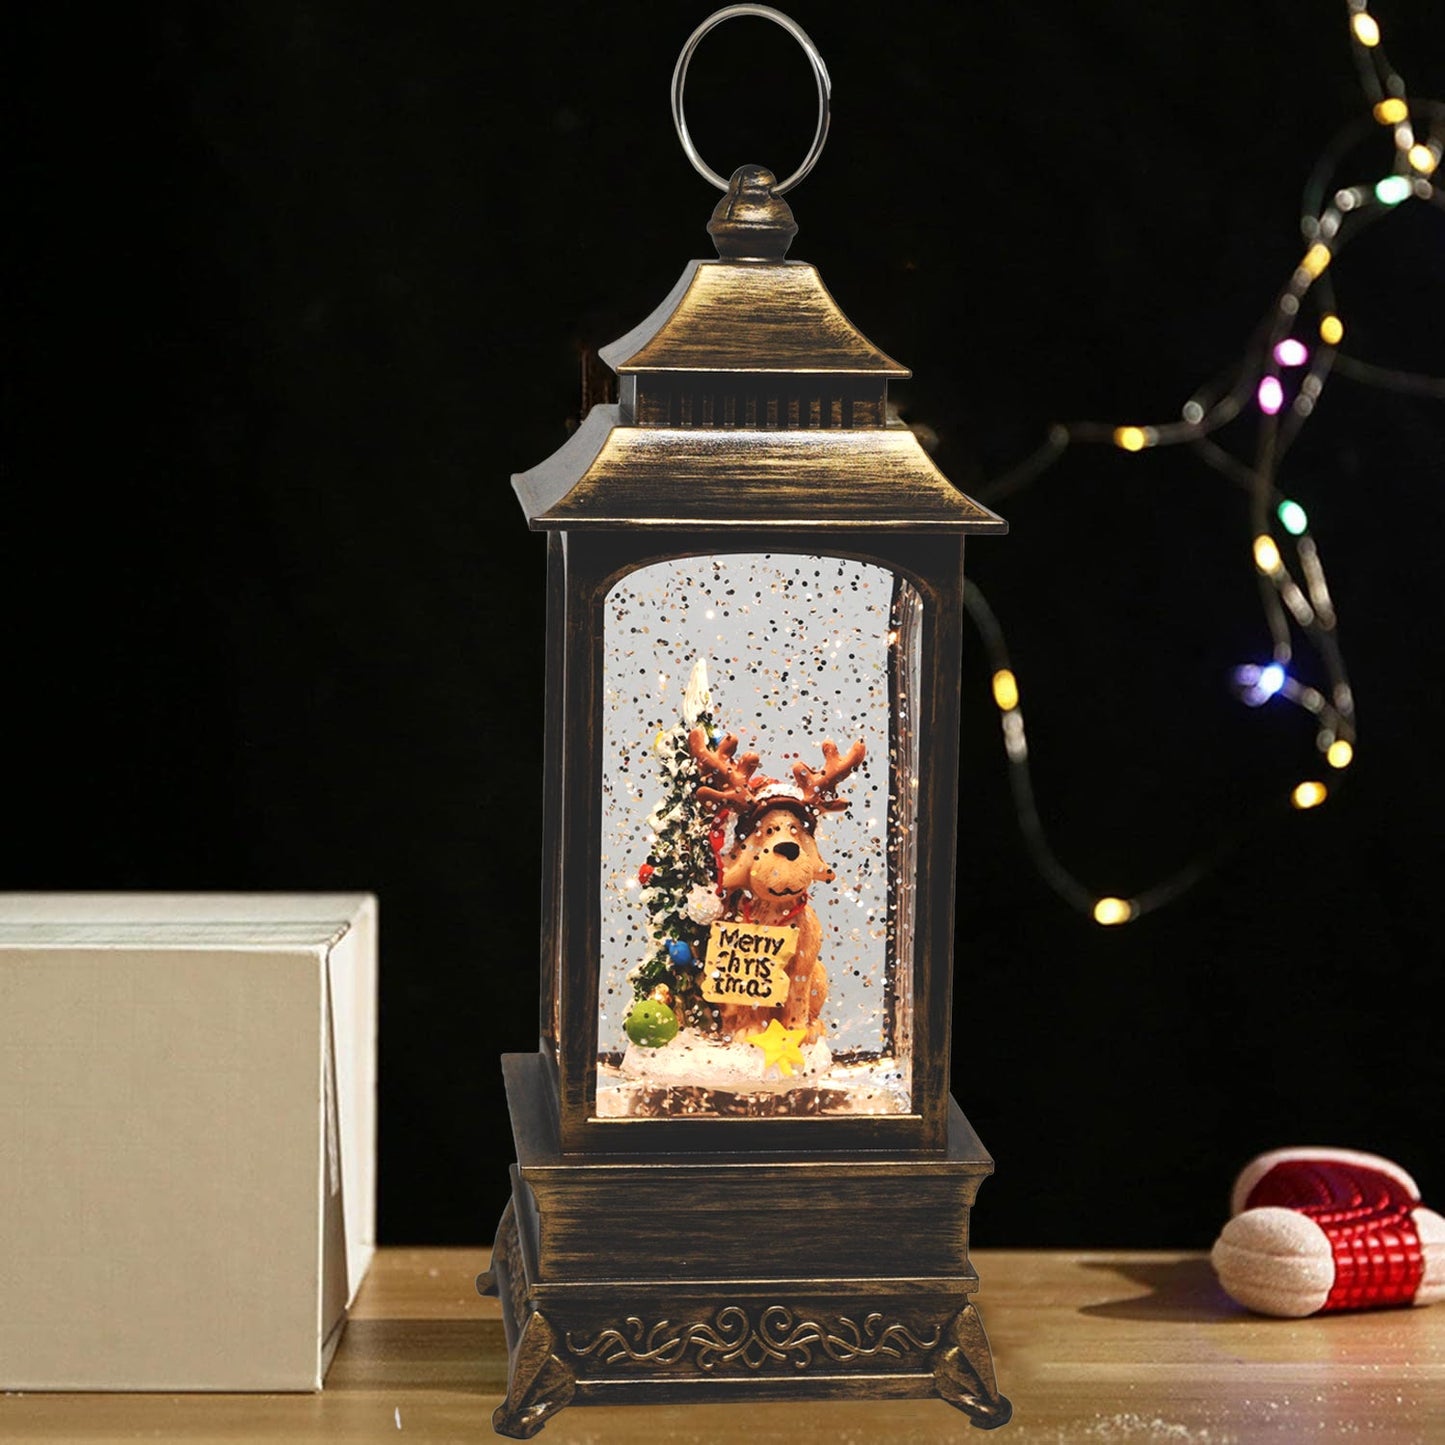 Christmas Musical Snow Globe Lantern, LED Glittering Hanging Lantern Decoration for Festival Gift Christmas Decorations, Home Decor Holiday Party Table Desk